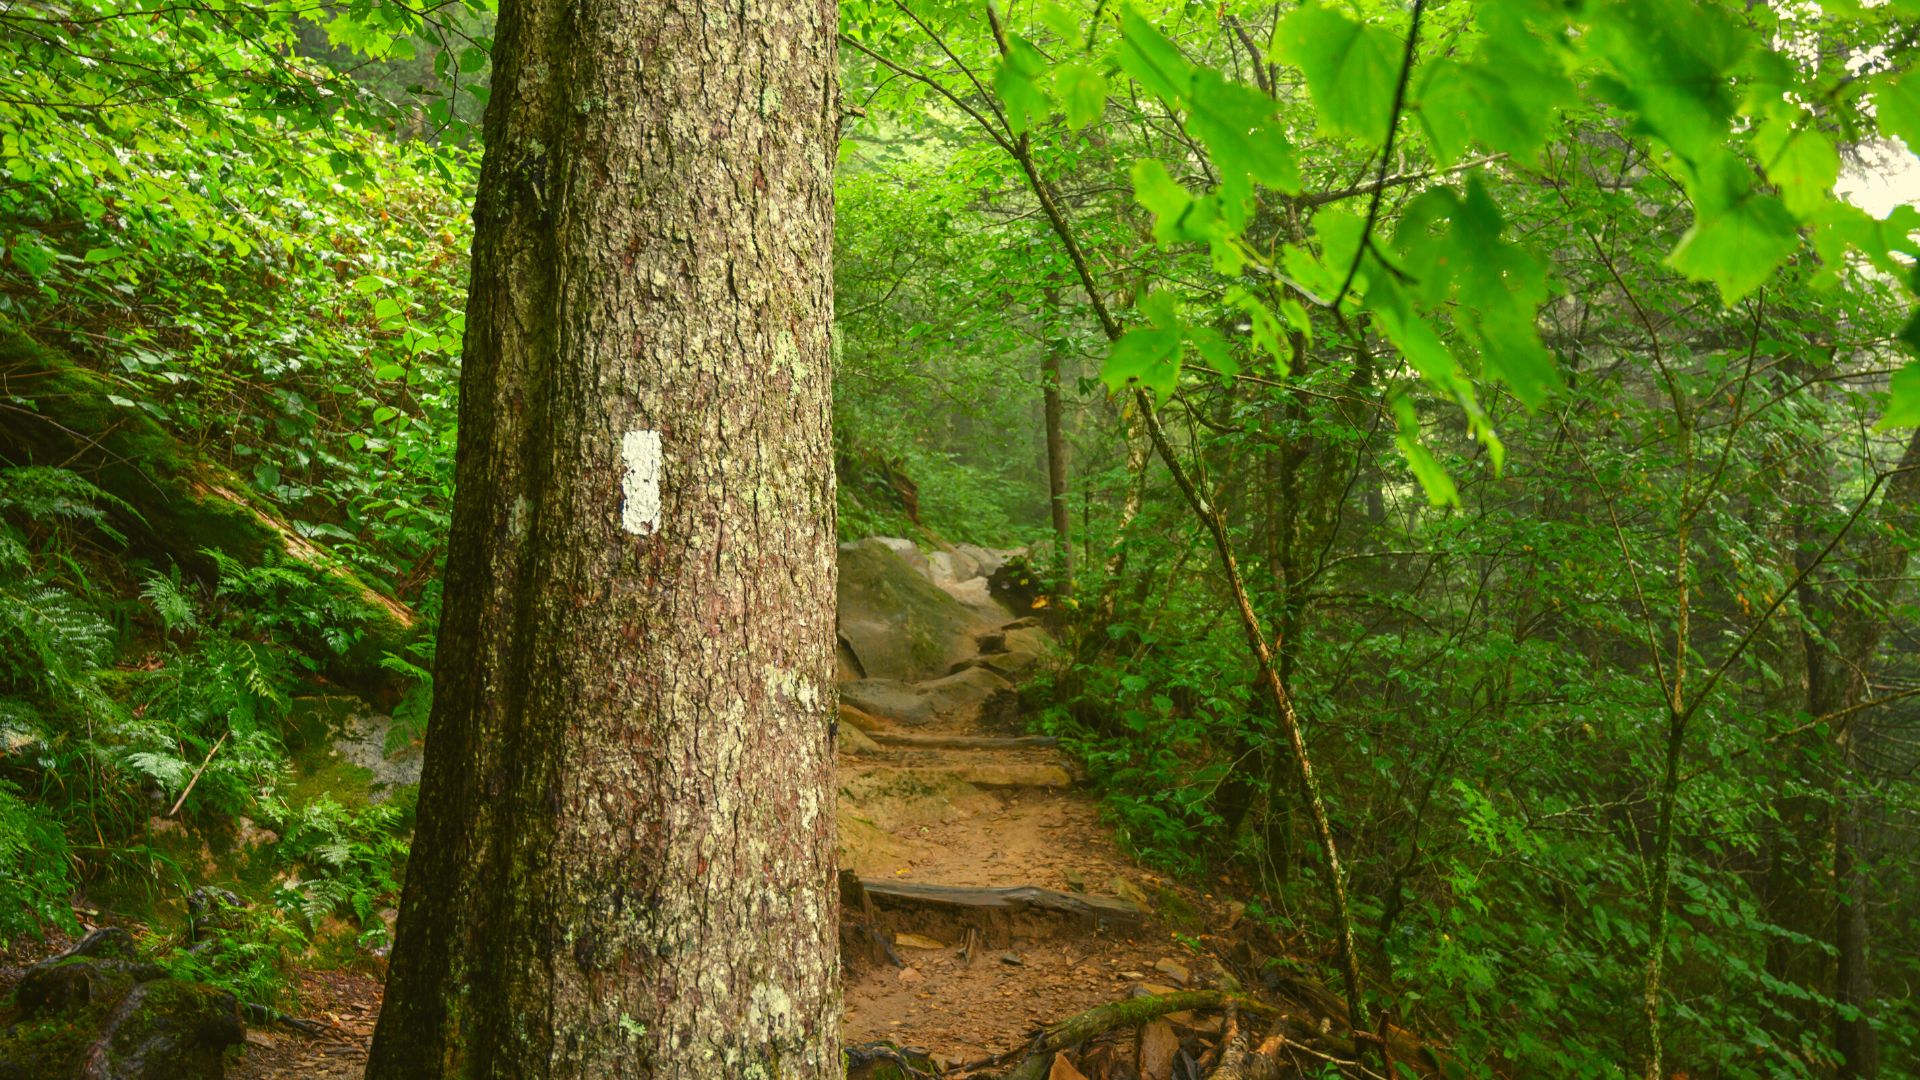 Appalachian Trail through the Smoky Mountains